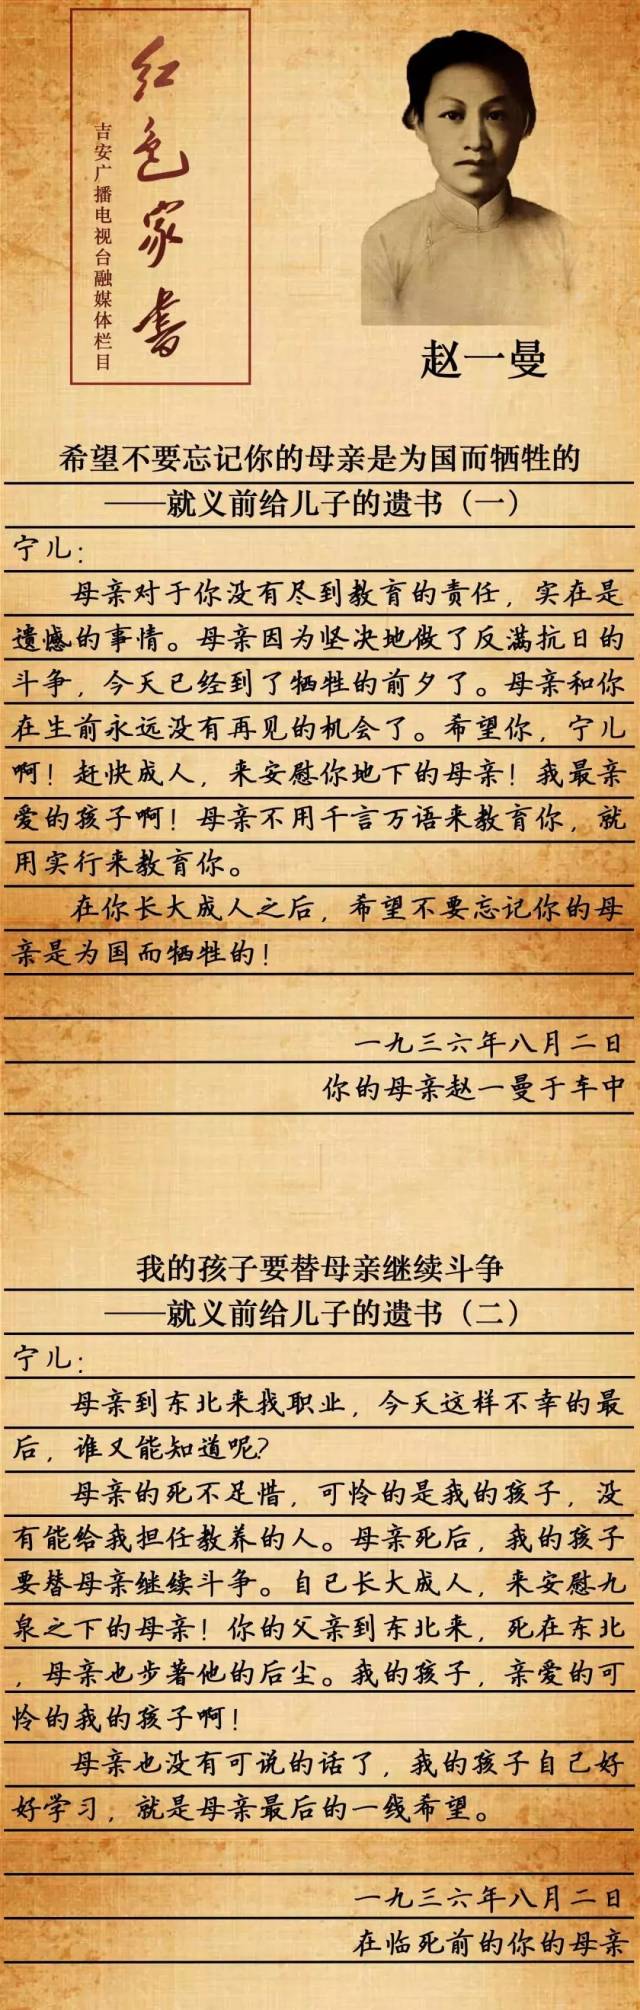 【夜读】特别栏目:赵一曼就义前给儿子的遗书